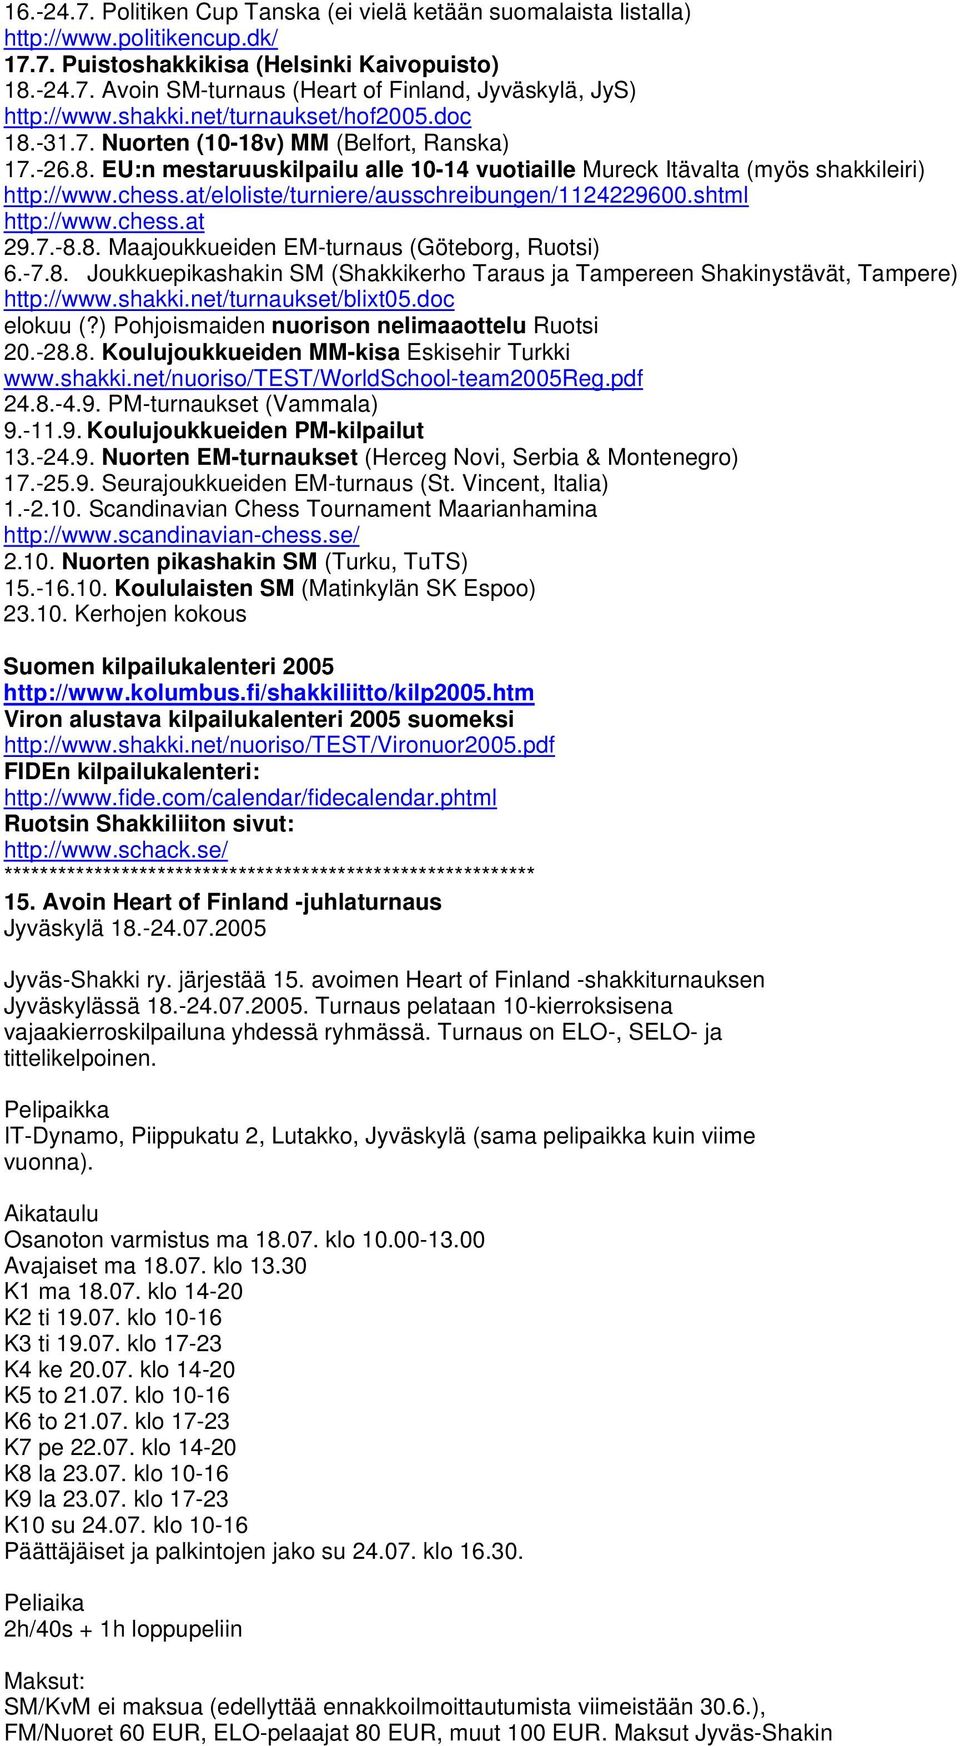 at/eloliste/turniere/ausschreibungen/1124229600.shtml http://www.chess.at 29.7.-8.8. Maajoukkueiden EM-turnaus (Göteborg, Ruotsi) 6.-7.8. Joukkuepikashakin SM (Shakkikerho Taraus ja Tampereen Shakinystävät, Tampere) http://www.